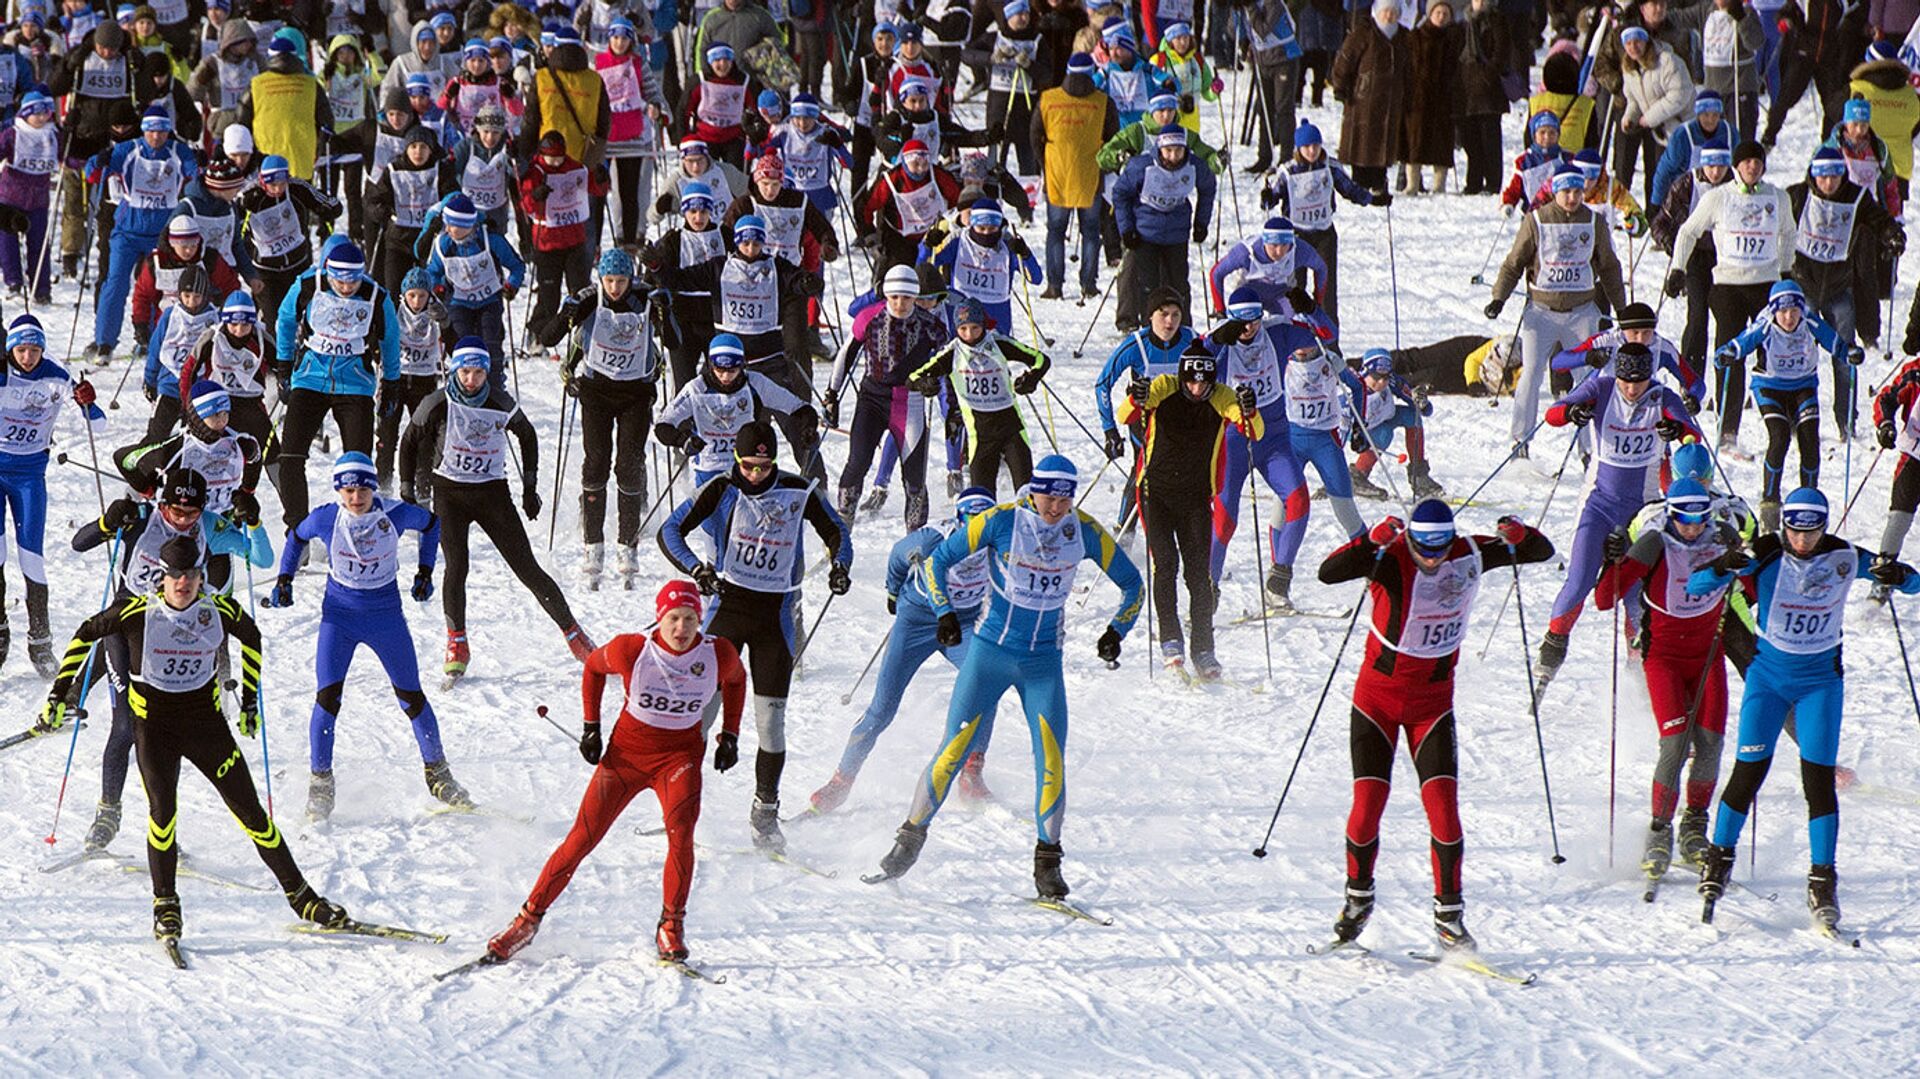 Благотворительный спортивный праздник Лыжня 6250 пройдет 19 февраля - РИА Новости, 1920, 19.01.2022